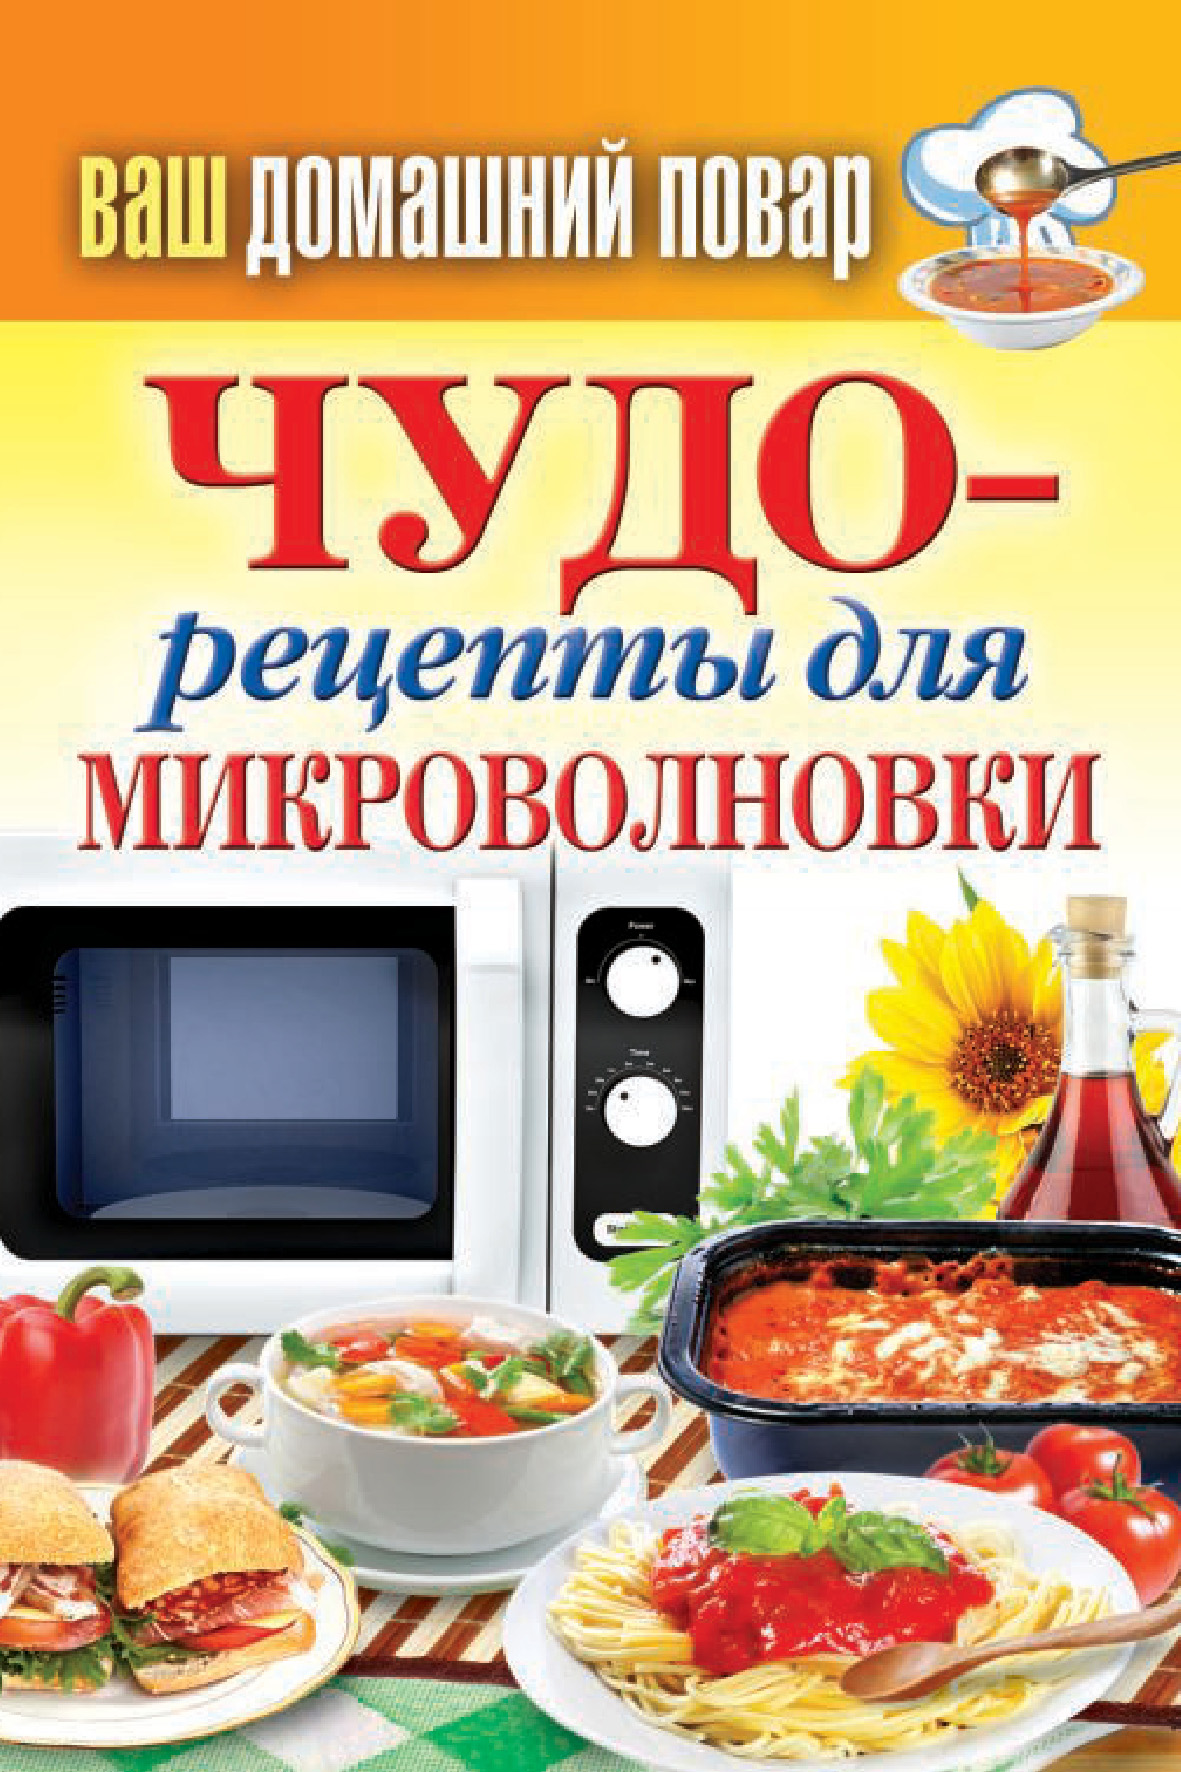 Бутерброды в микроволновке - пошаговый рецепт с фото на centerforstrategy.ru